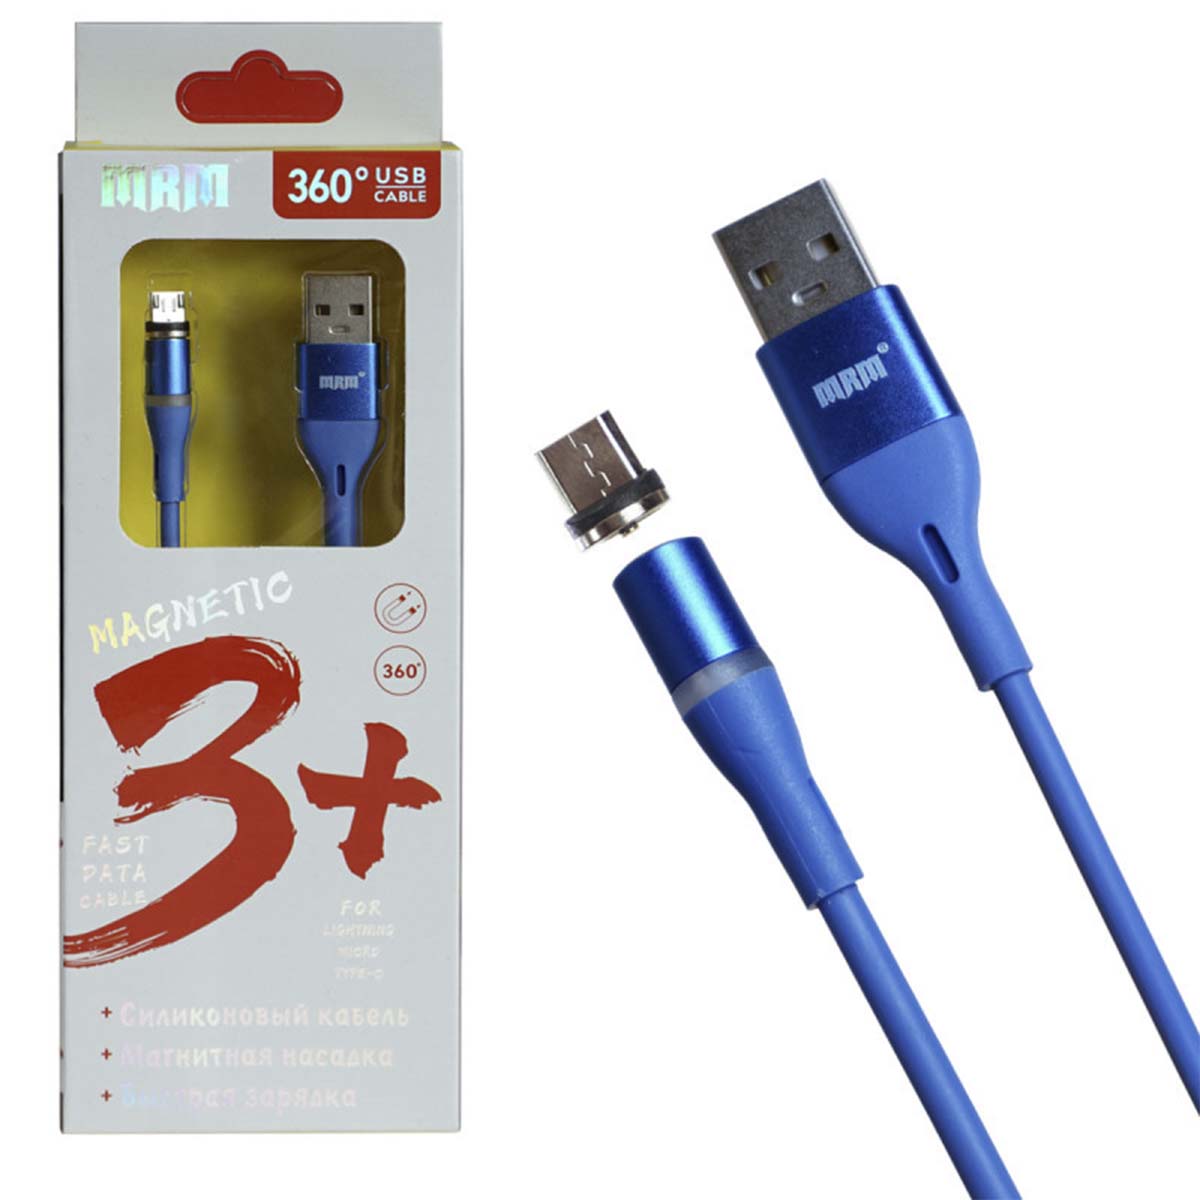 Магнитный зарядный кабель MRM 360m, длина 1 метр, с магнитной насадкой Micro USB, цвет синий